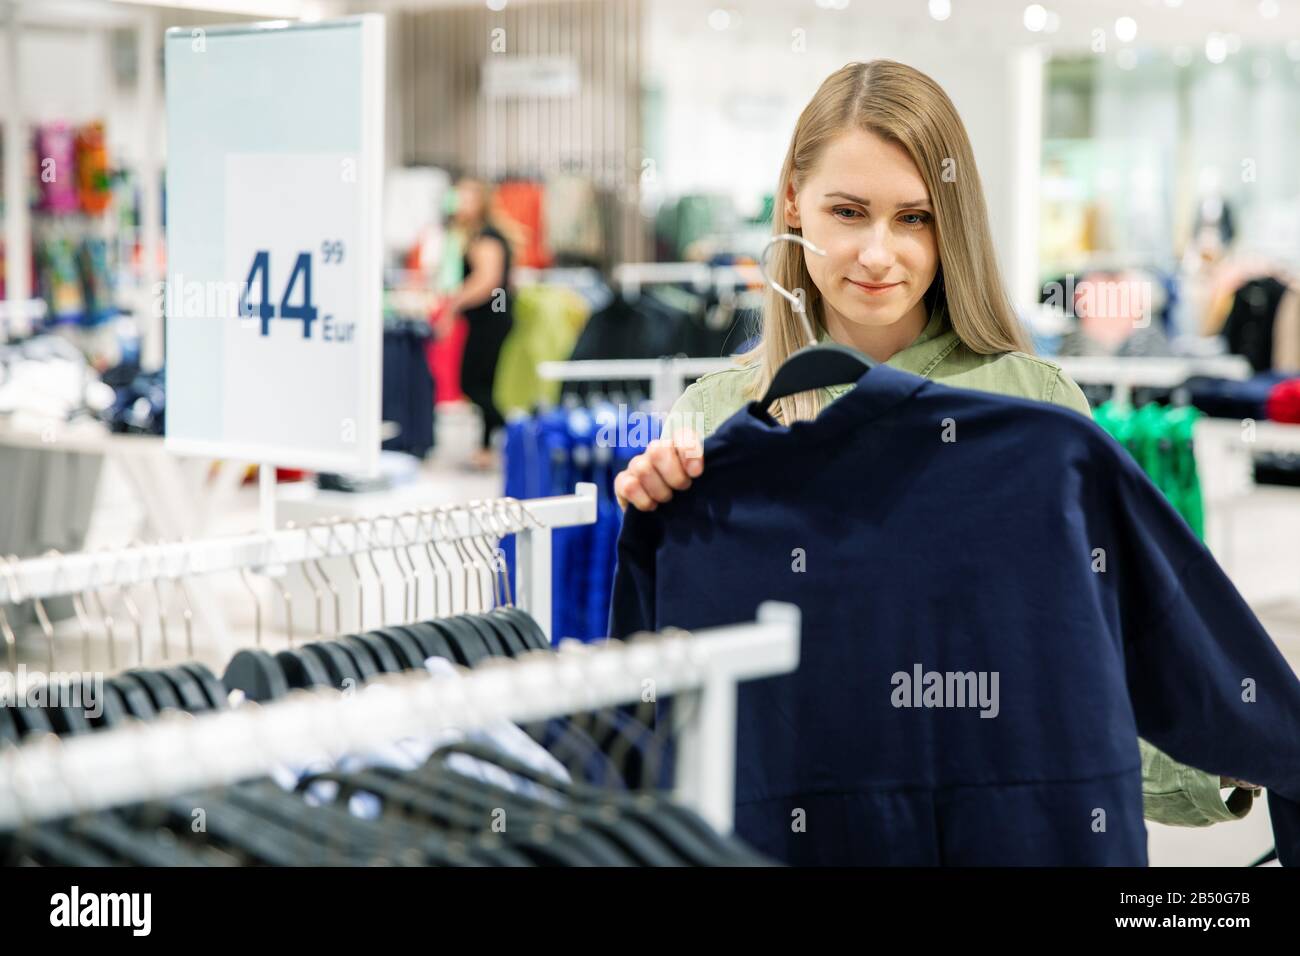 Junge Frau hat einen Shopping-Tag und sucht neue Kleidung im Bekleidungsgeschäft Stockfoto